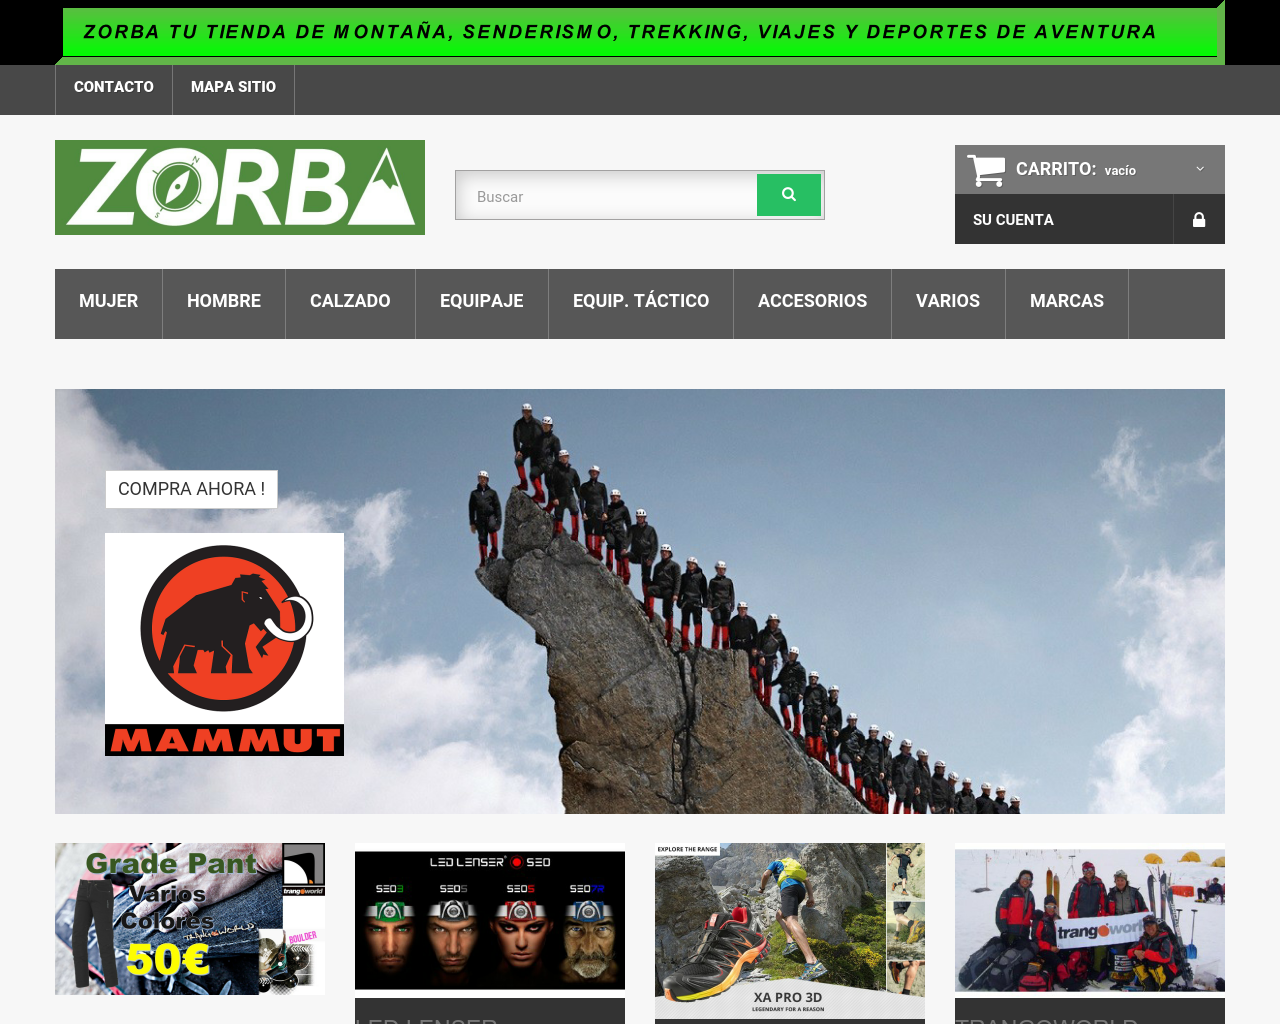 El sitio de la imagen zorba.es en 1280x1024